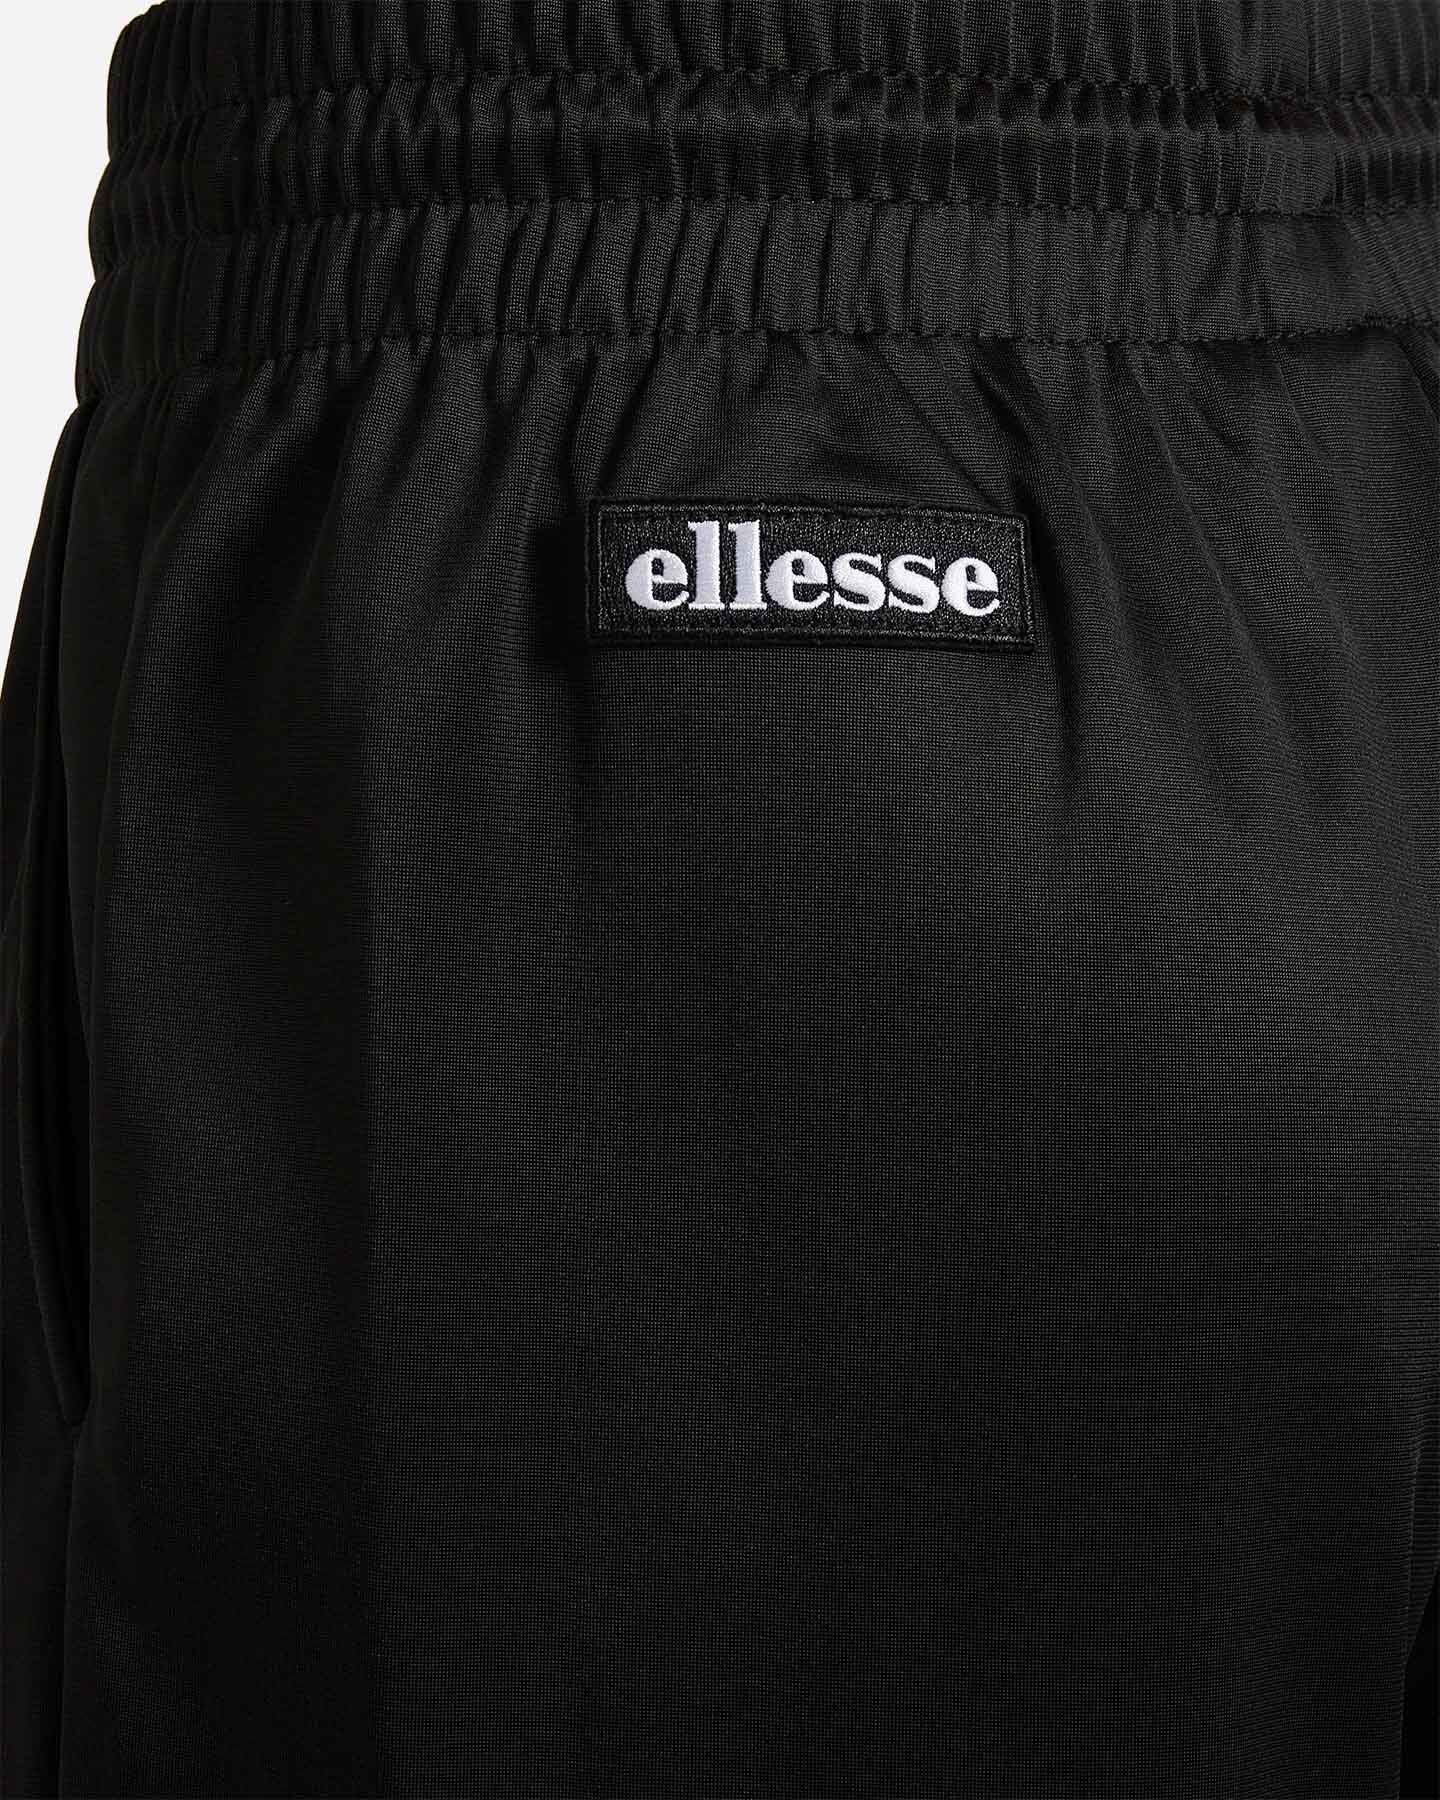  Pantalone ELLESSE TRIACETATO W S4081255|050|XS scatto 3